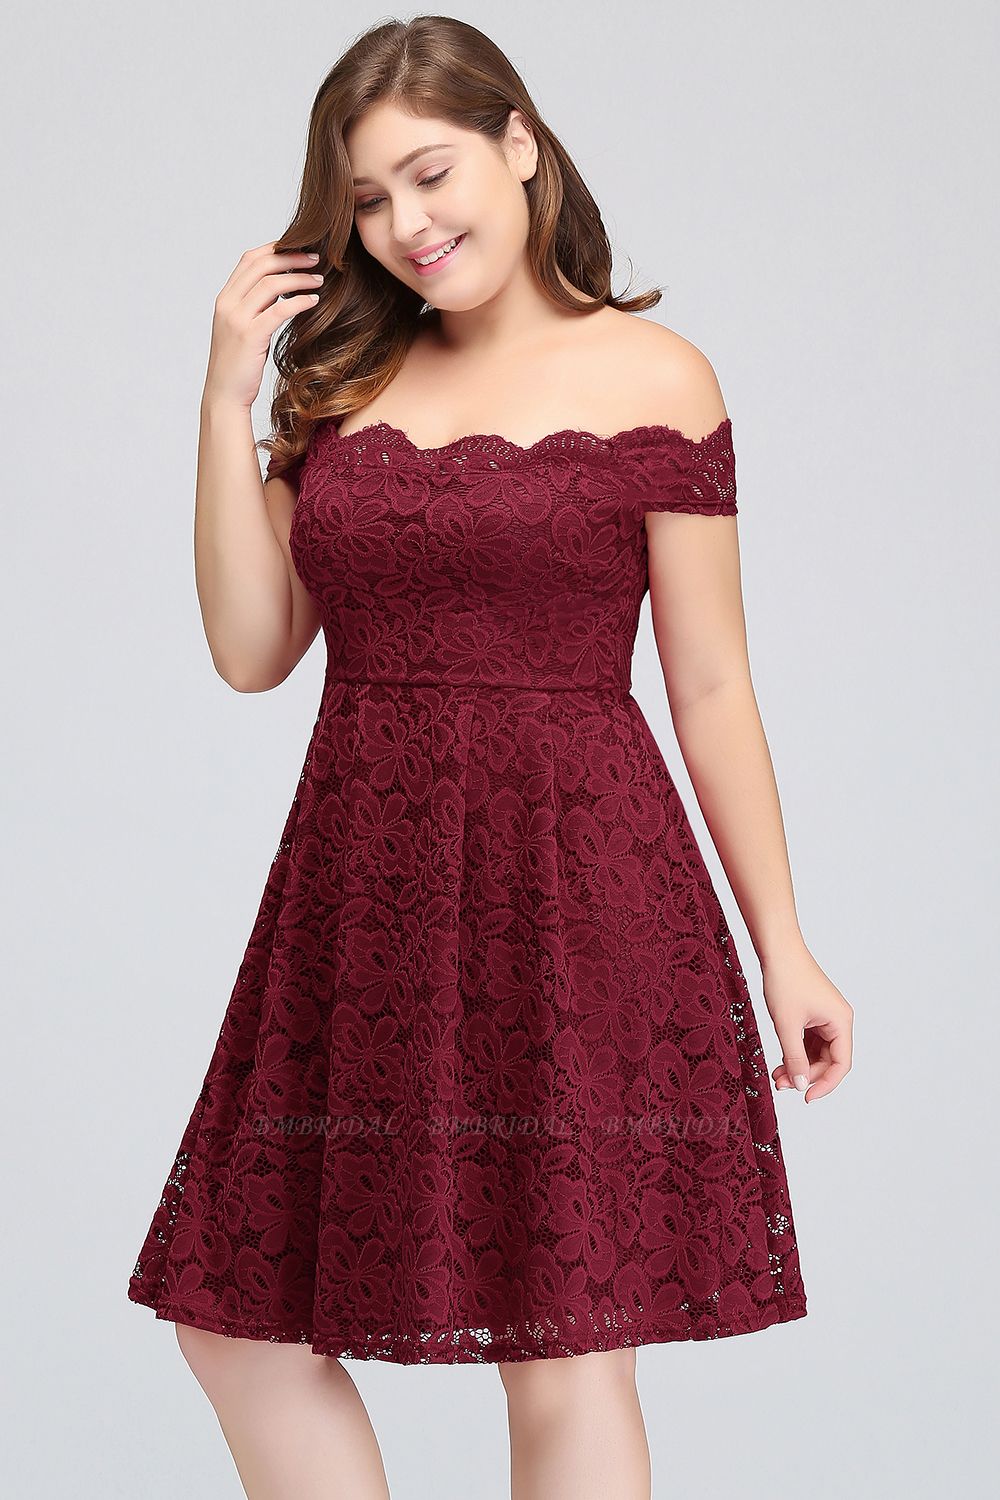 BMbridal Plus Size Off-the-Shoulder Burgundy Lace Short Bridesmaid Dress Online